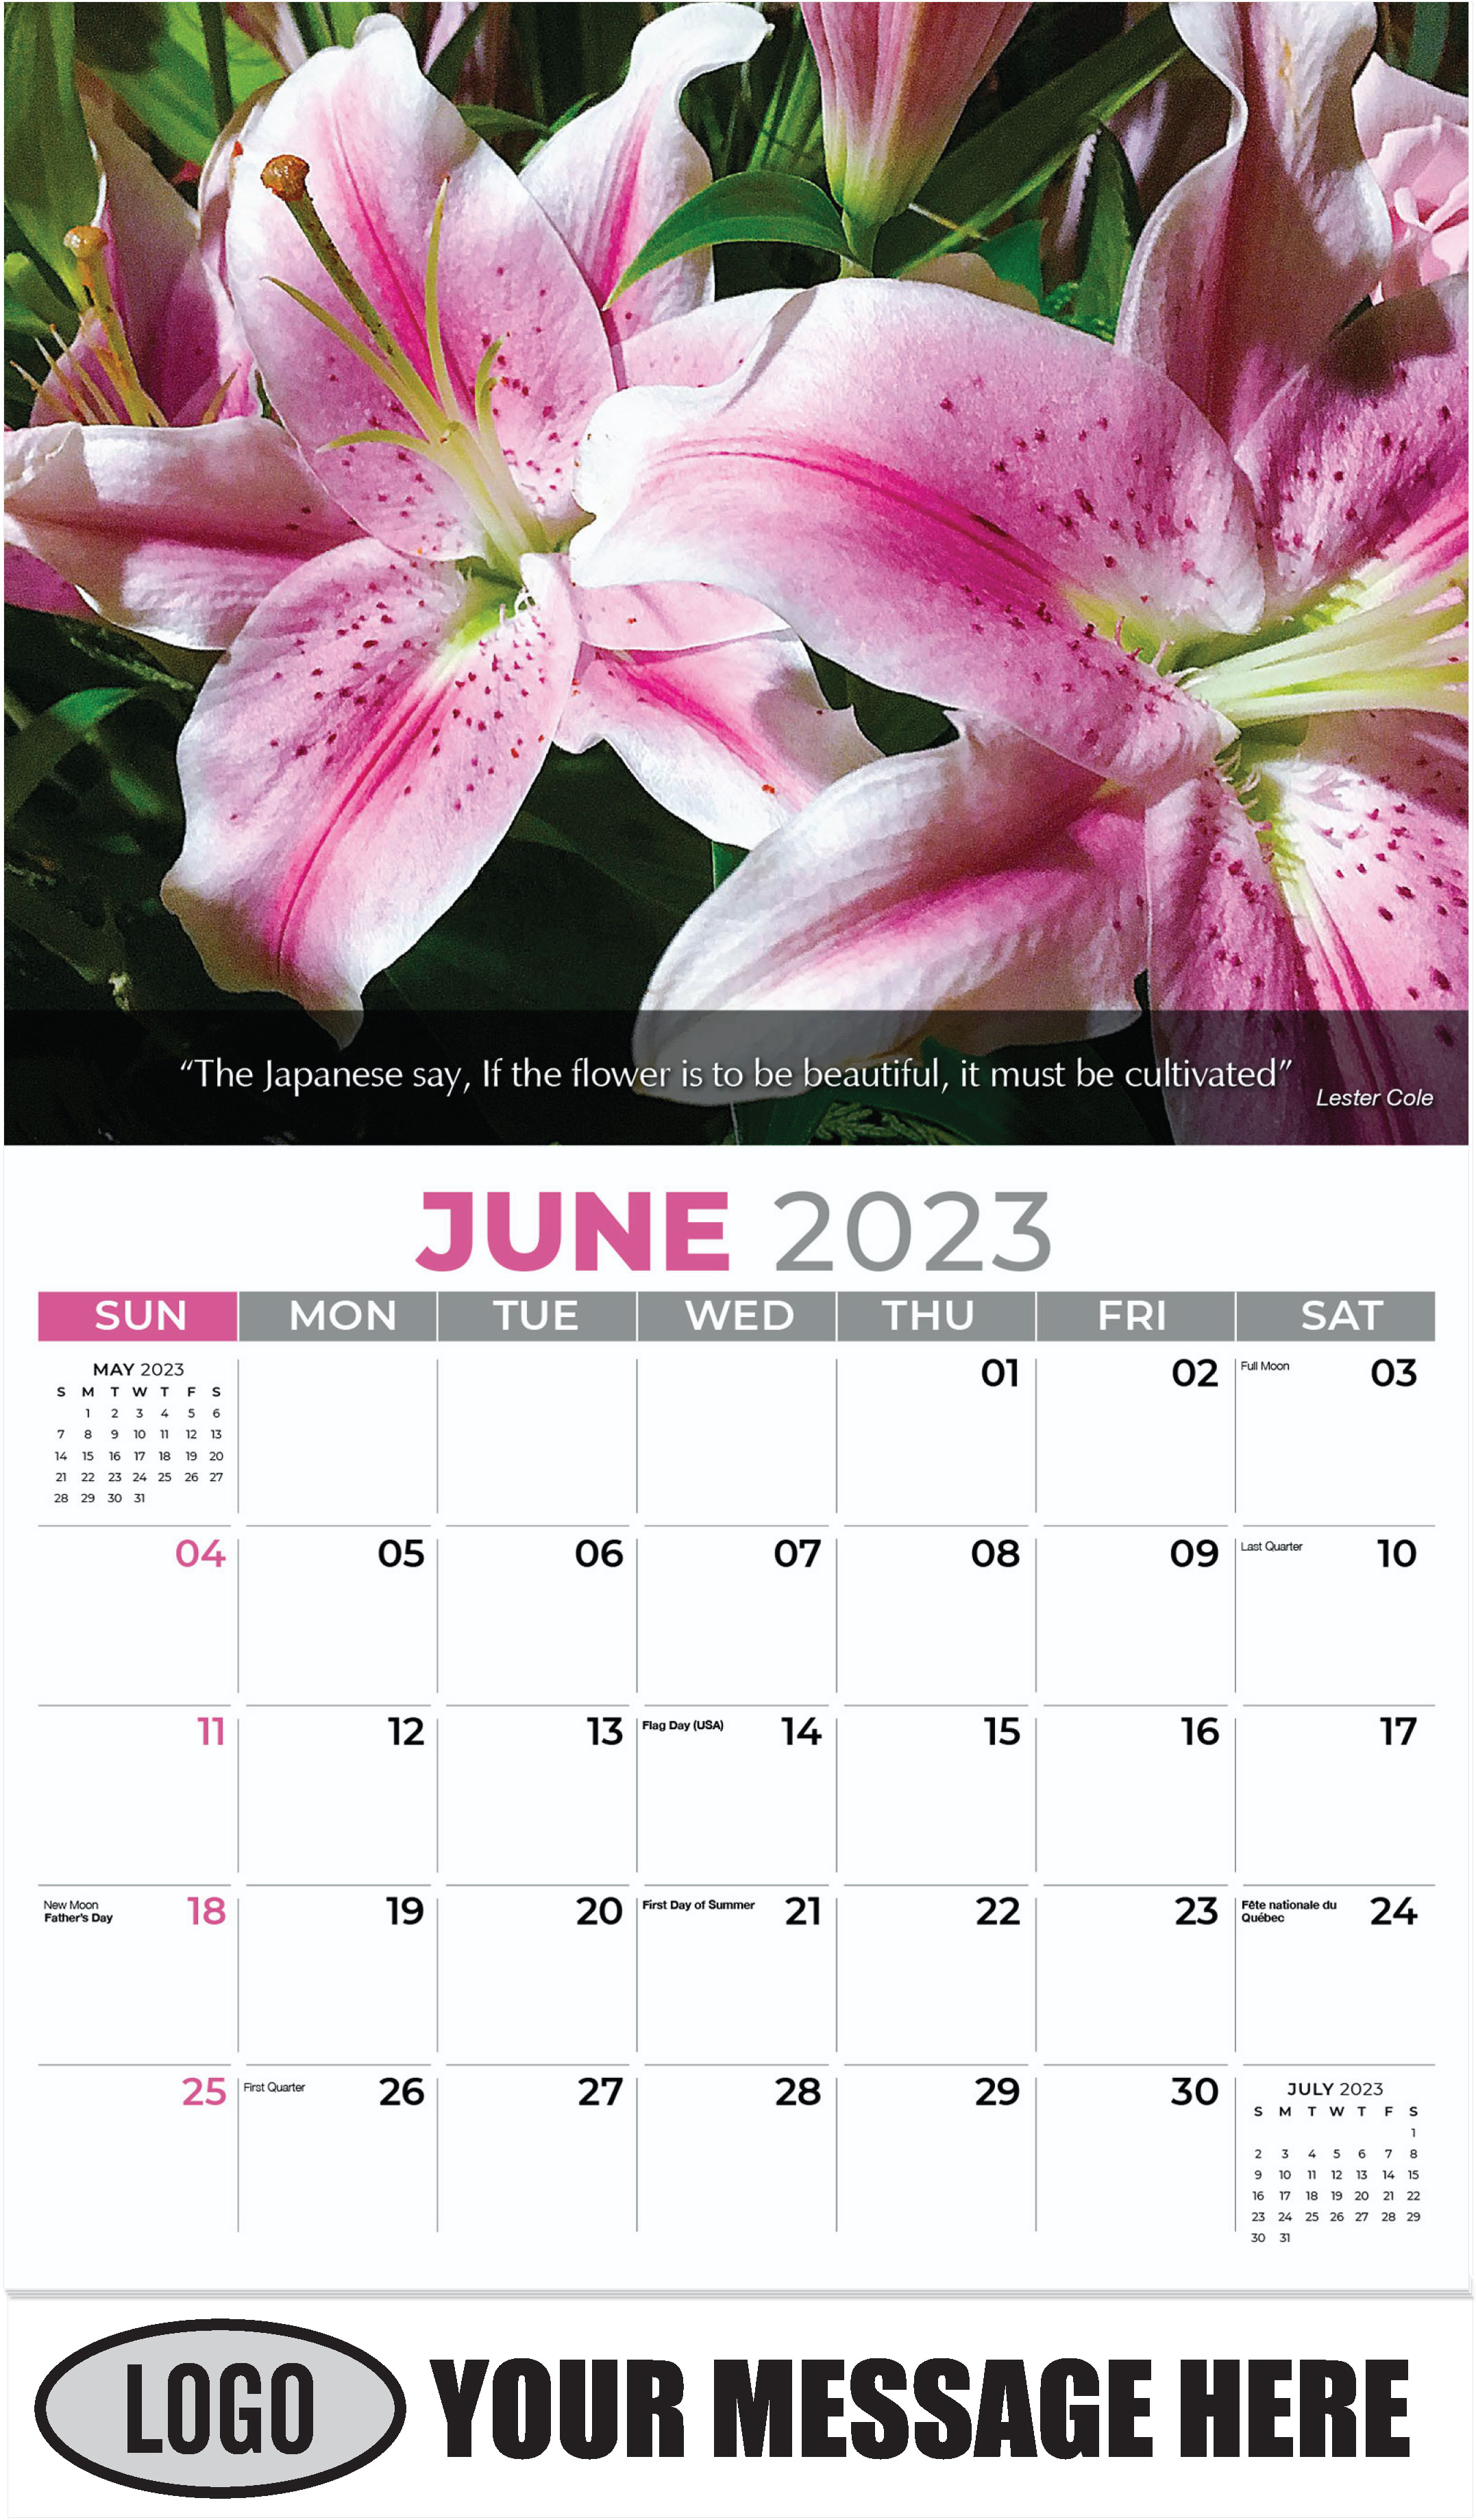 Pink Lilies - June - Flowers & Gardens 2023 Promotional Calendar